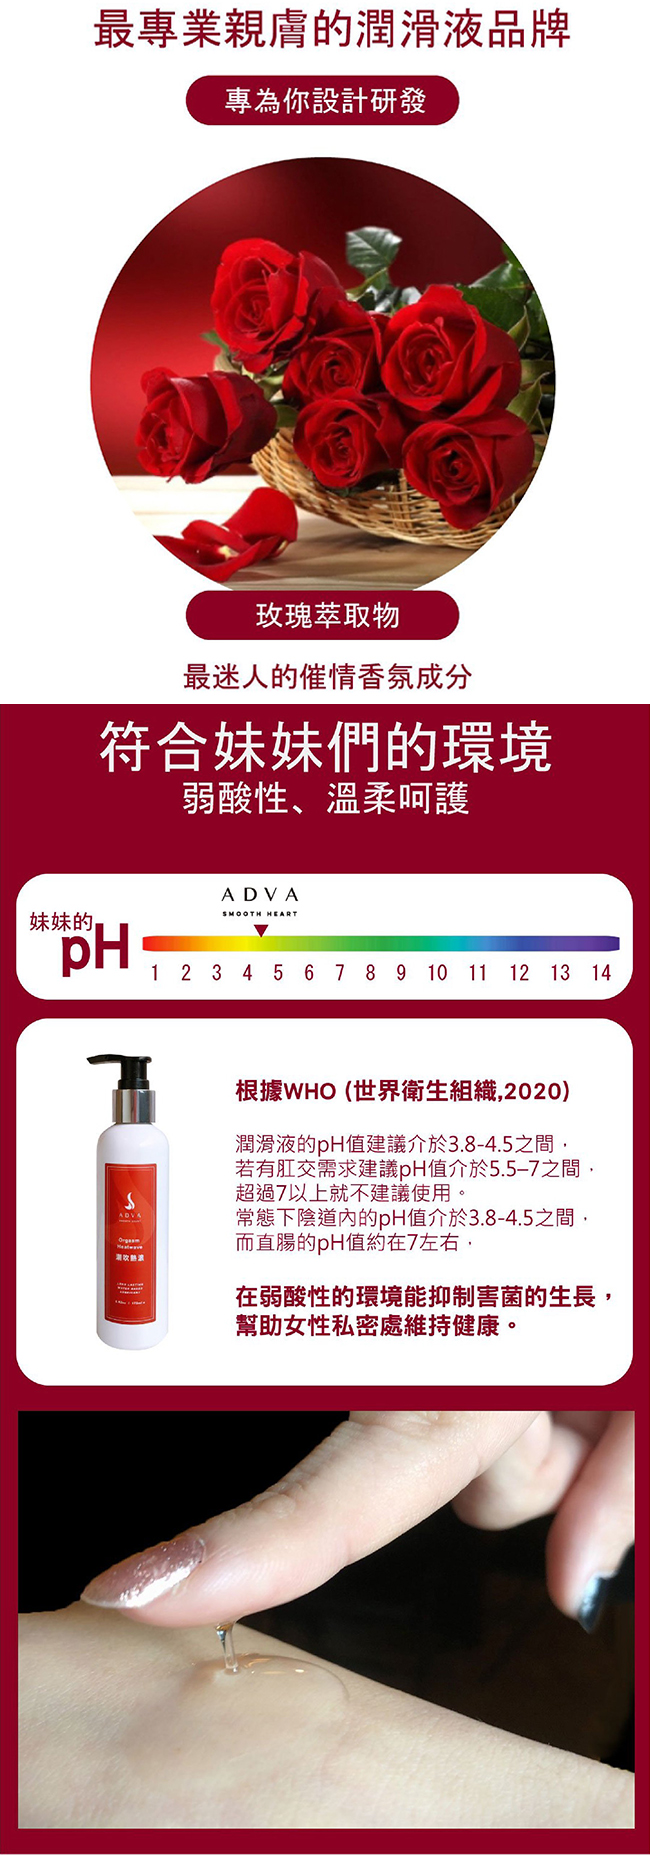 台灣製造 ADVA．Orgasm Heatwave 潮吹熱浪潤滑液 200ml